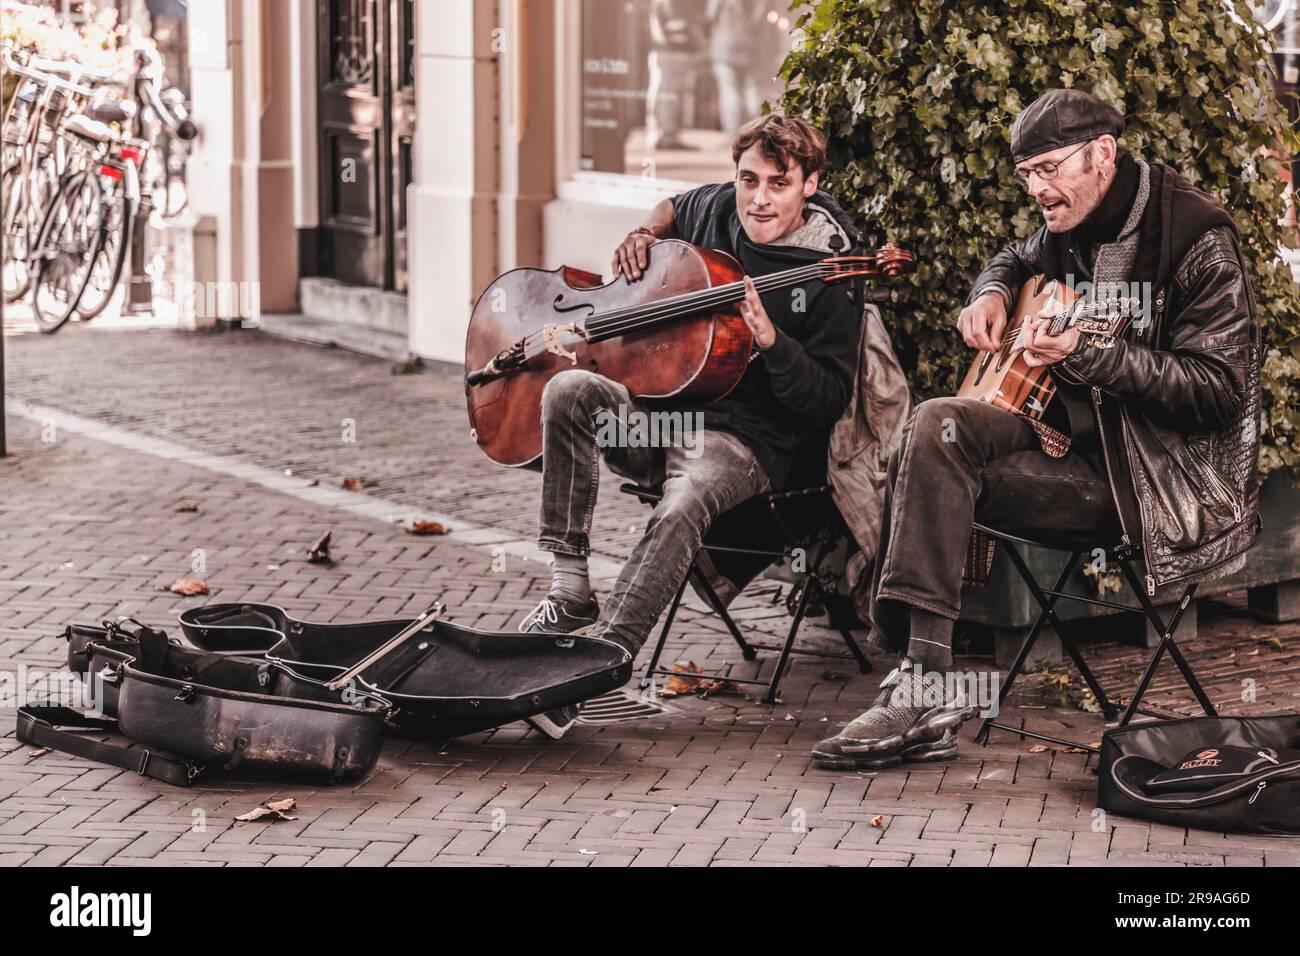 Utrecht, NL - 9. Okt 2021: Zwei Straßenmusiker treten im Stadtzentrum von Utrecht auf. Stockfoto